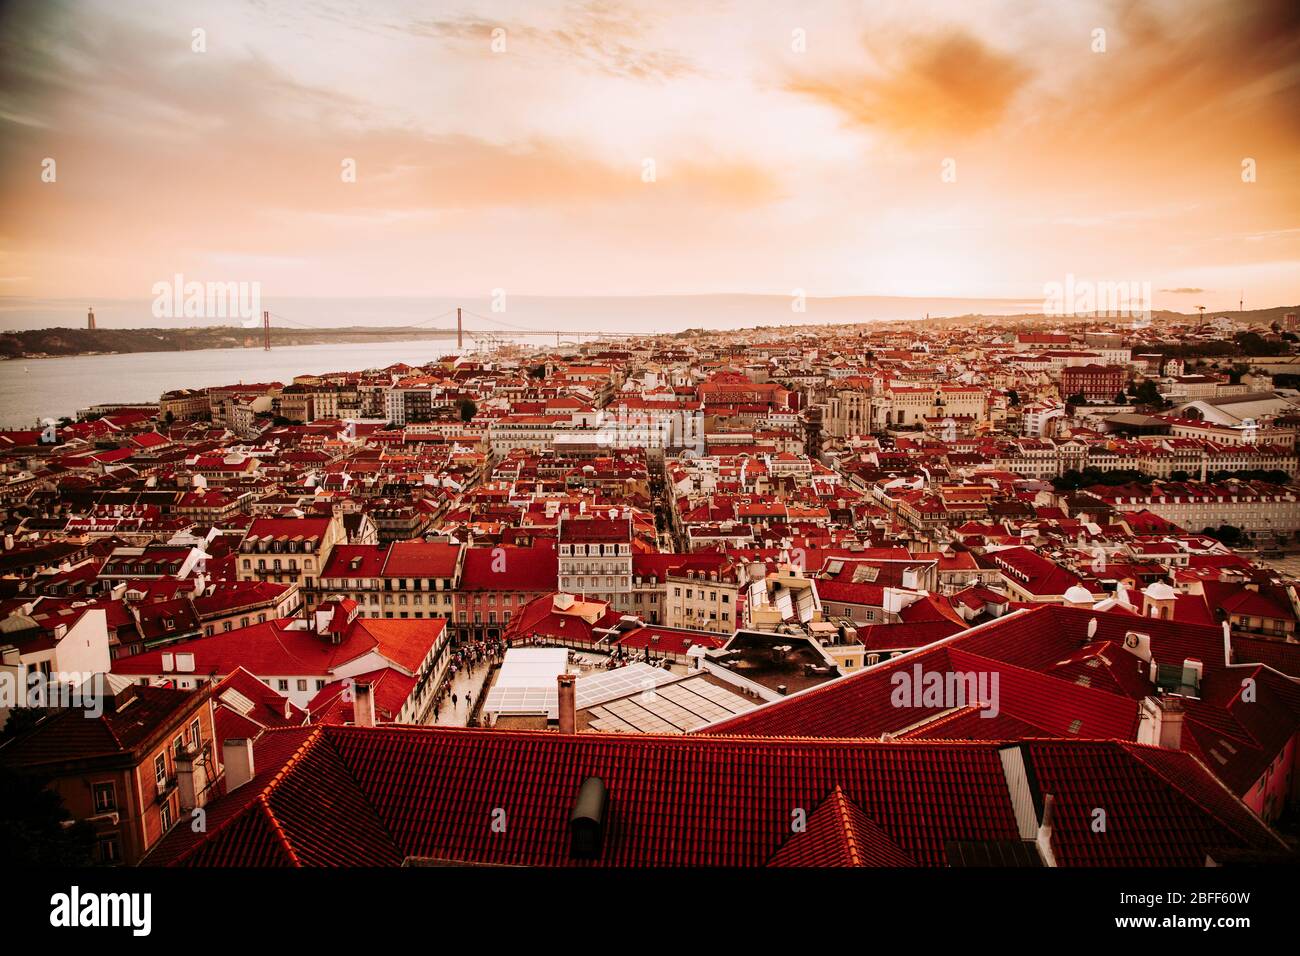 Magnifique panorama de la vieille ville et du quartier de Baixa dans la ville de Lisbonne au coucher du soleil, vu de la colline du château de Sao Jorge, Portugal Banque D'Images